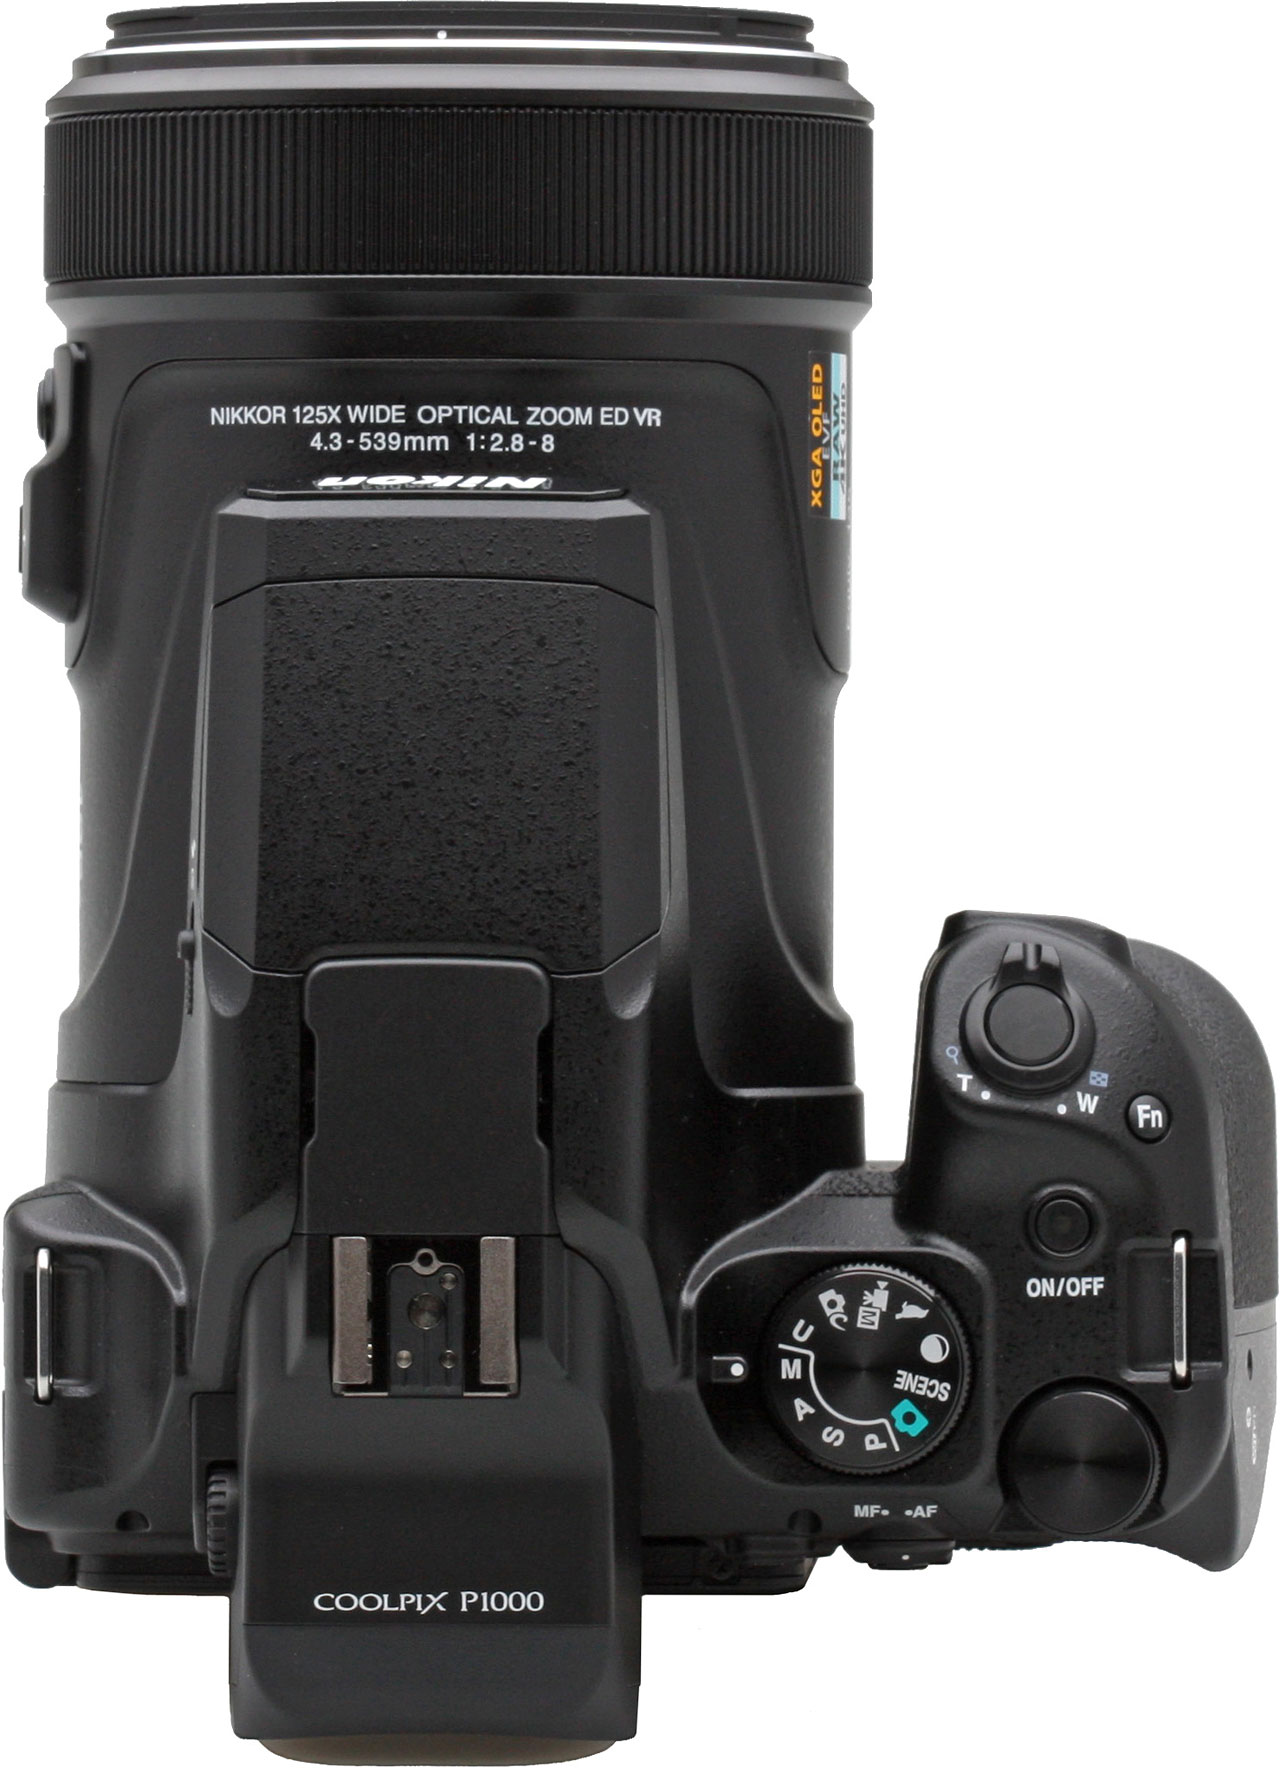 Zwakheid Hoes Verlengen Nikon P1000 Review - Conclusion